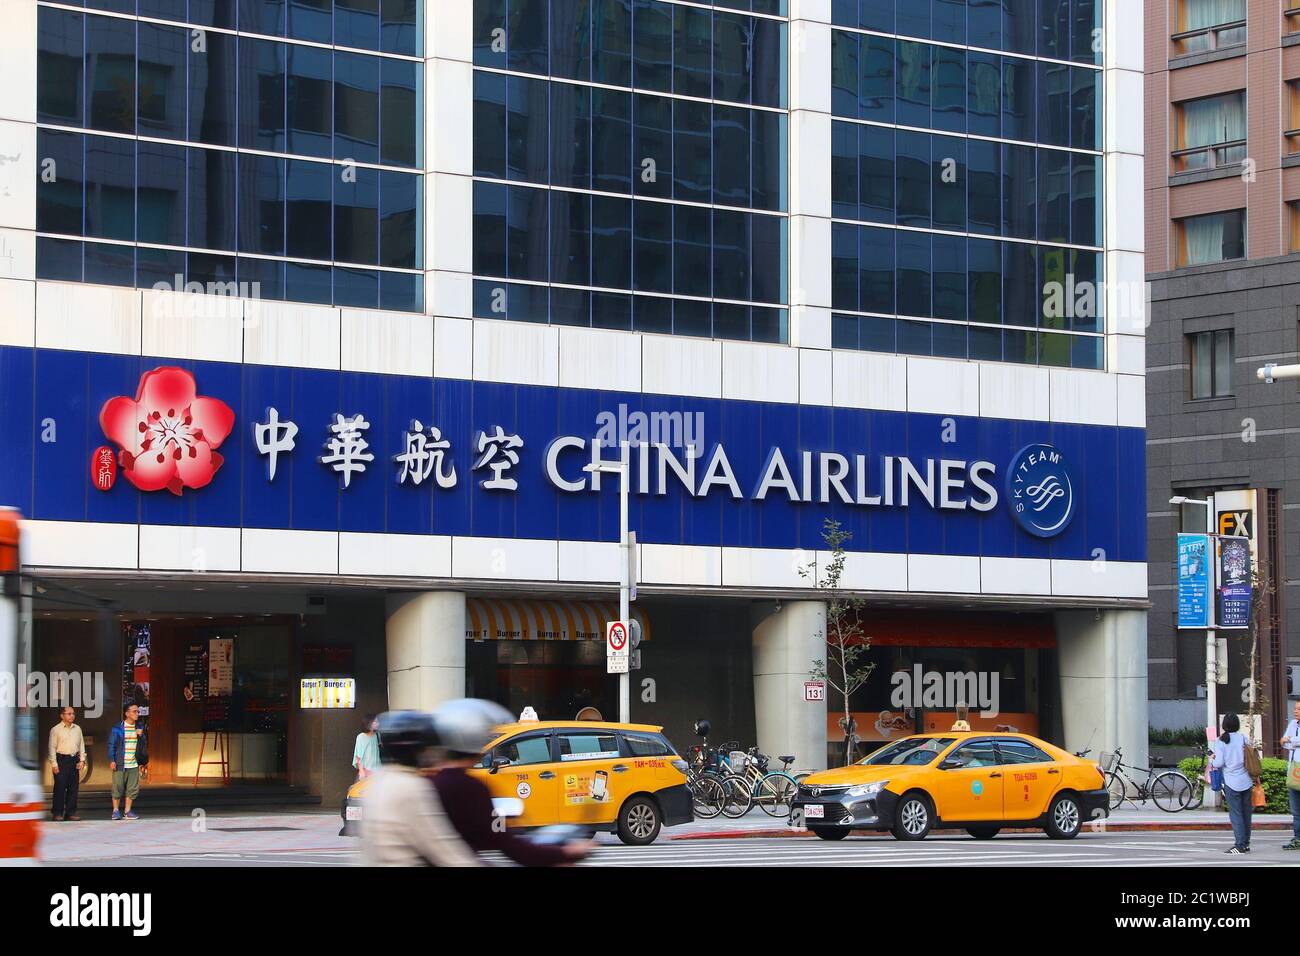 TAIPEI, TAÏWAN - 4 DÉCEMBRE 2018 : billetterie de China Airlines à Taipei. China Airlines est la compagnie aérienne nationale de Taïwan. Banque D'Images